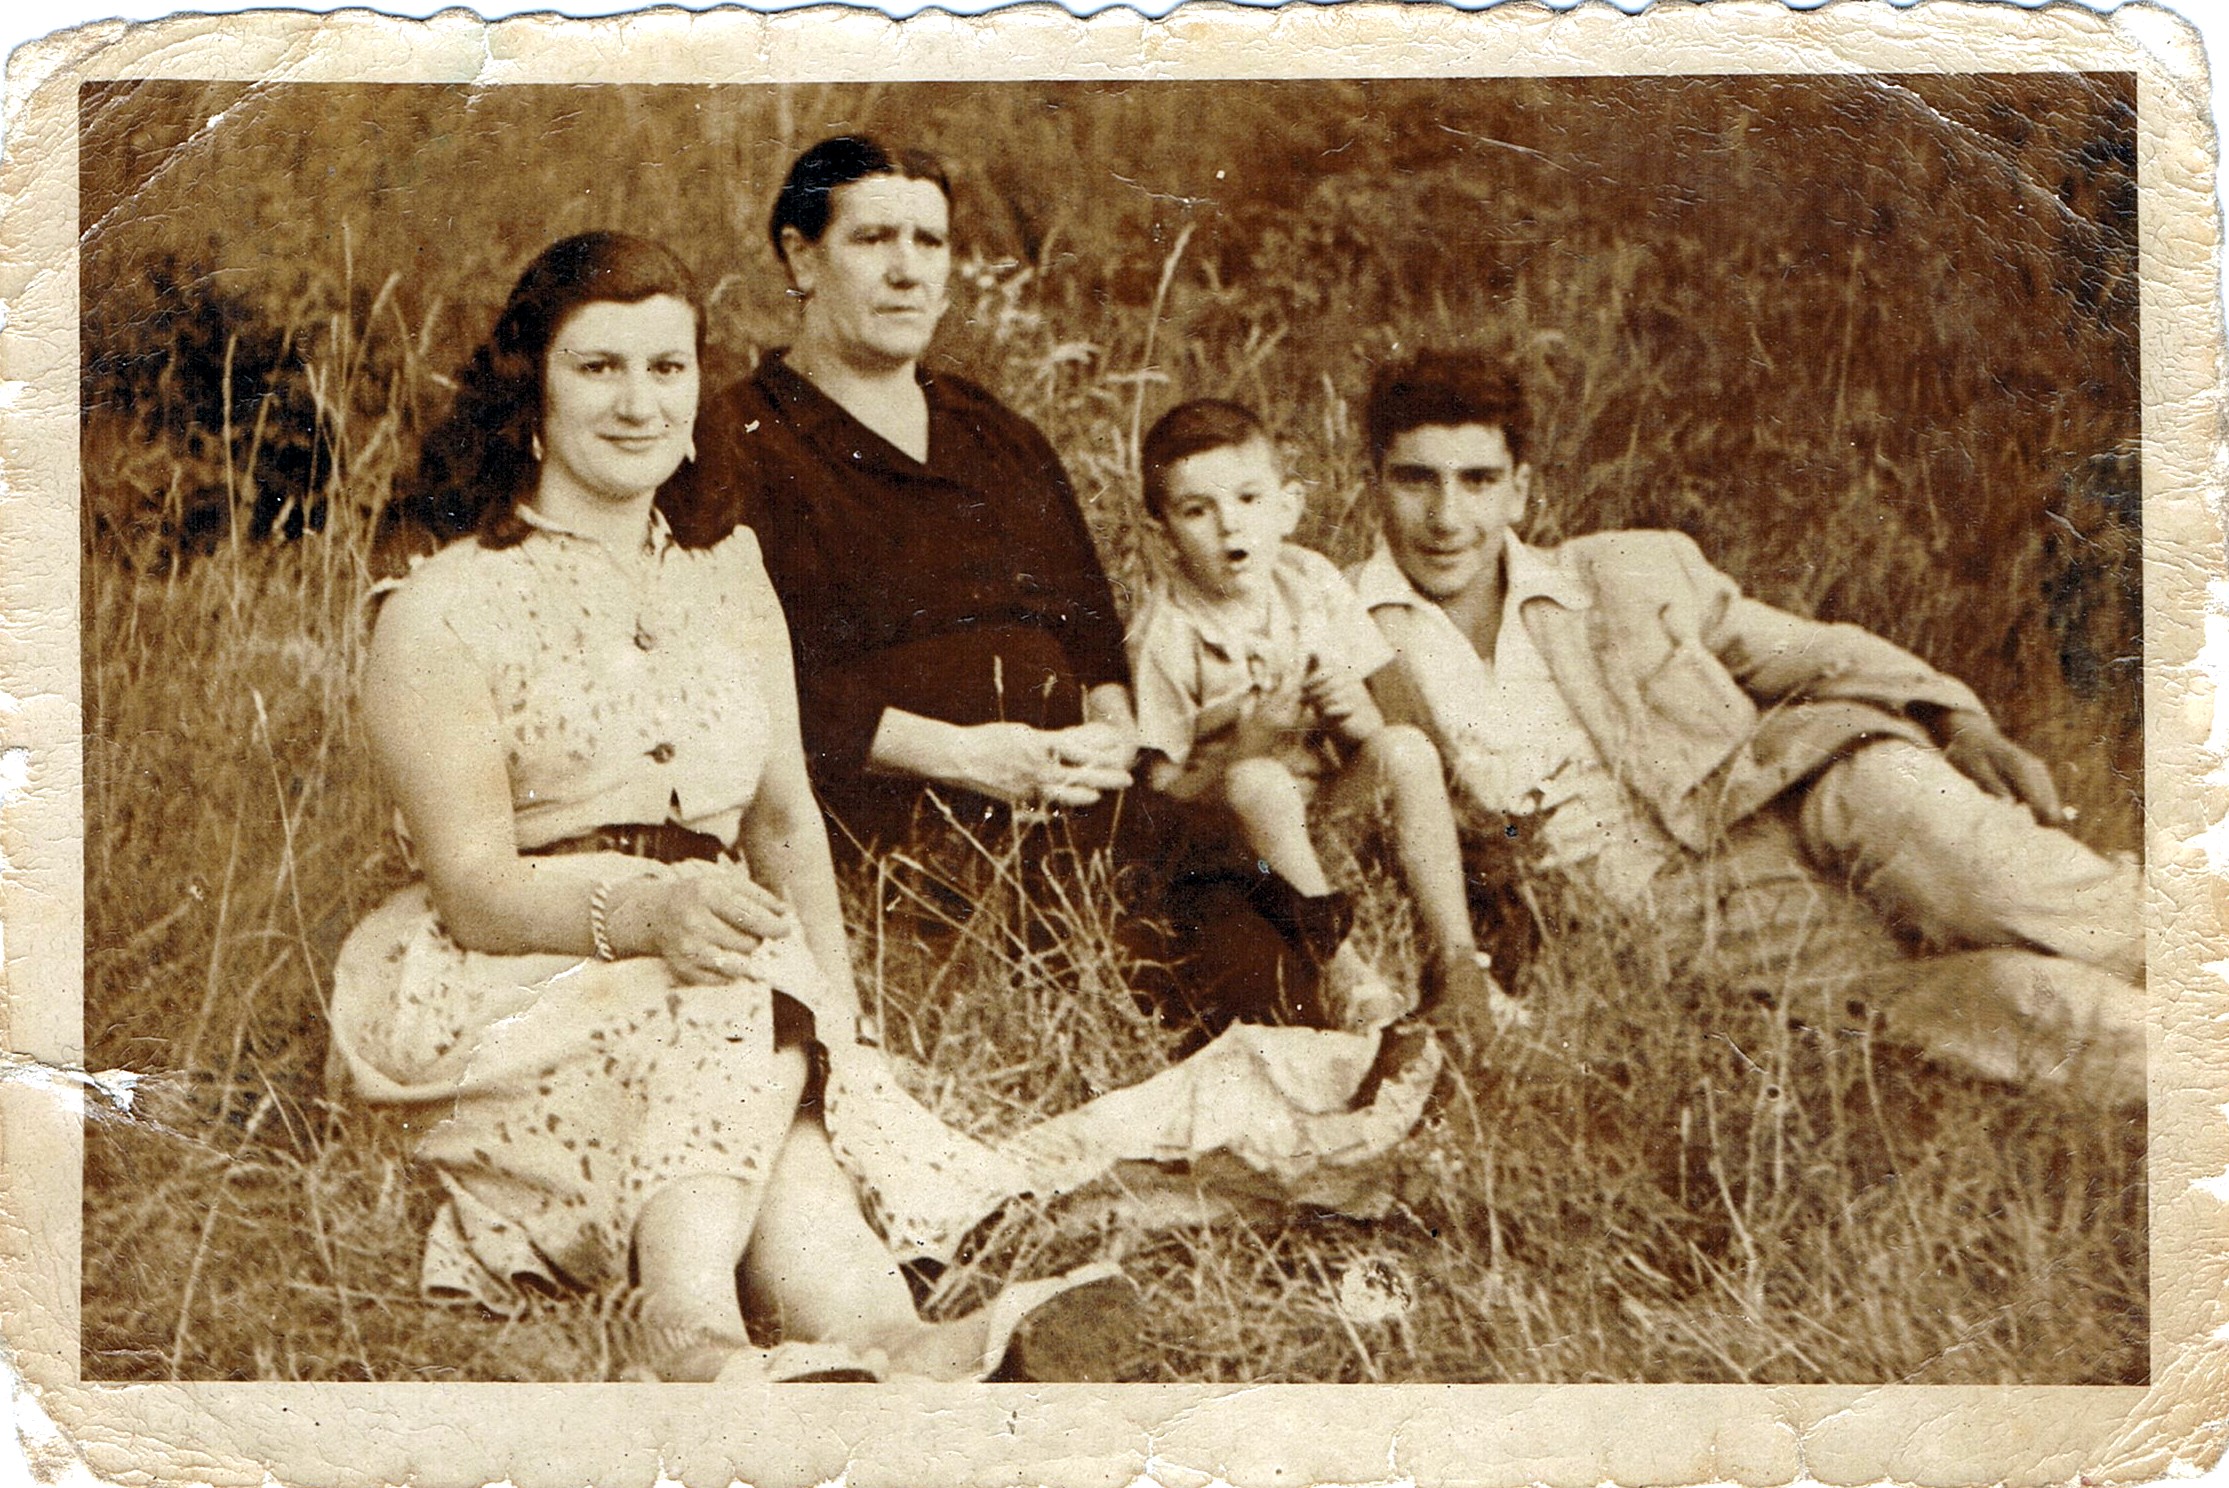 Ampliar: Na romaría da Saleta coa miña avoa Rosa, miña nai e Paulino Nuñez, 1952